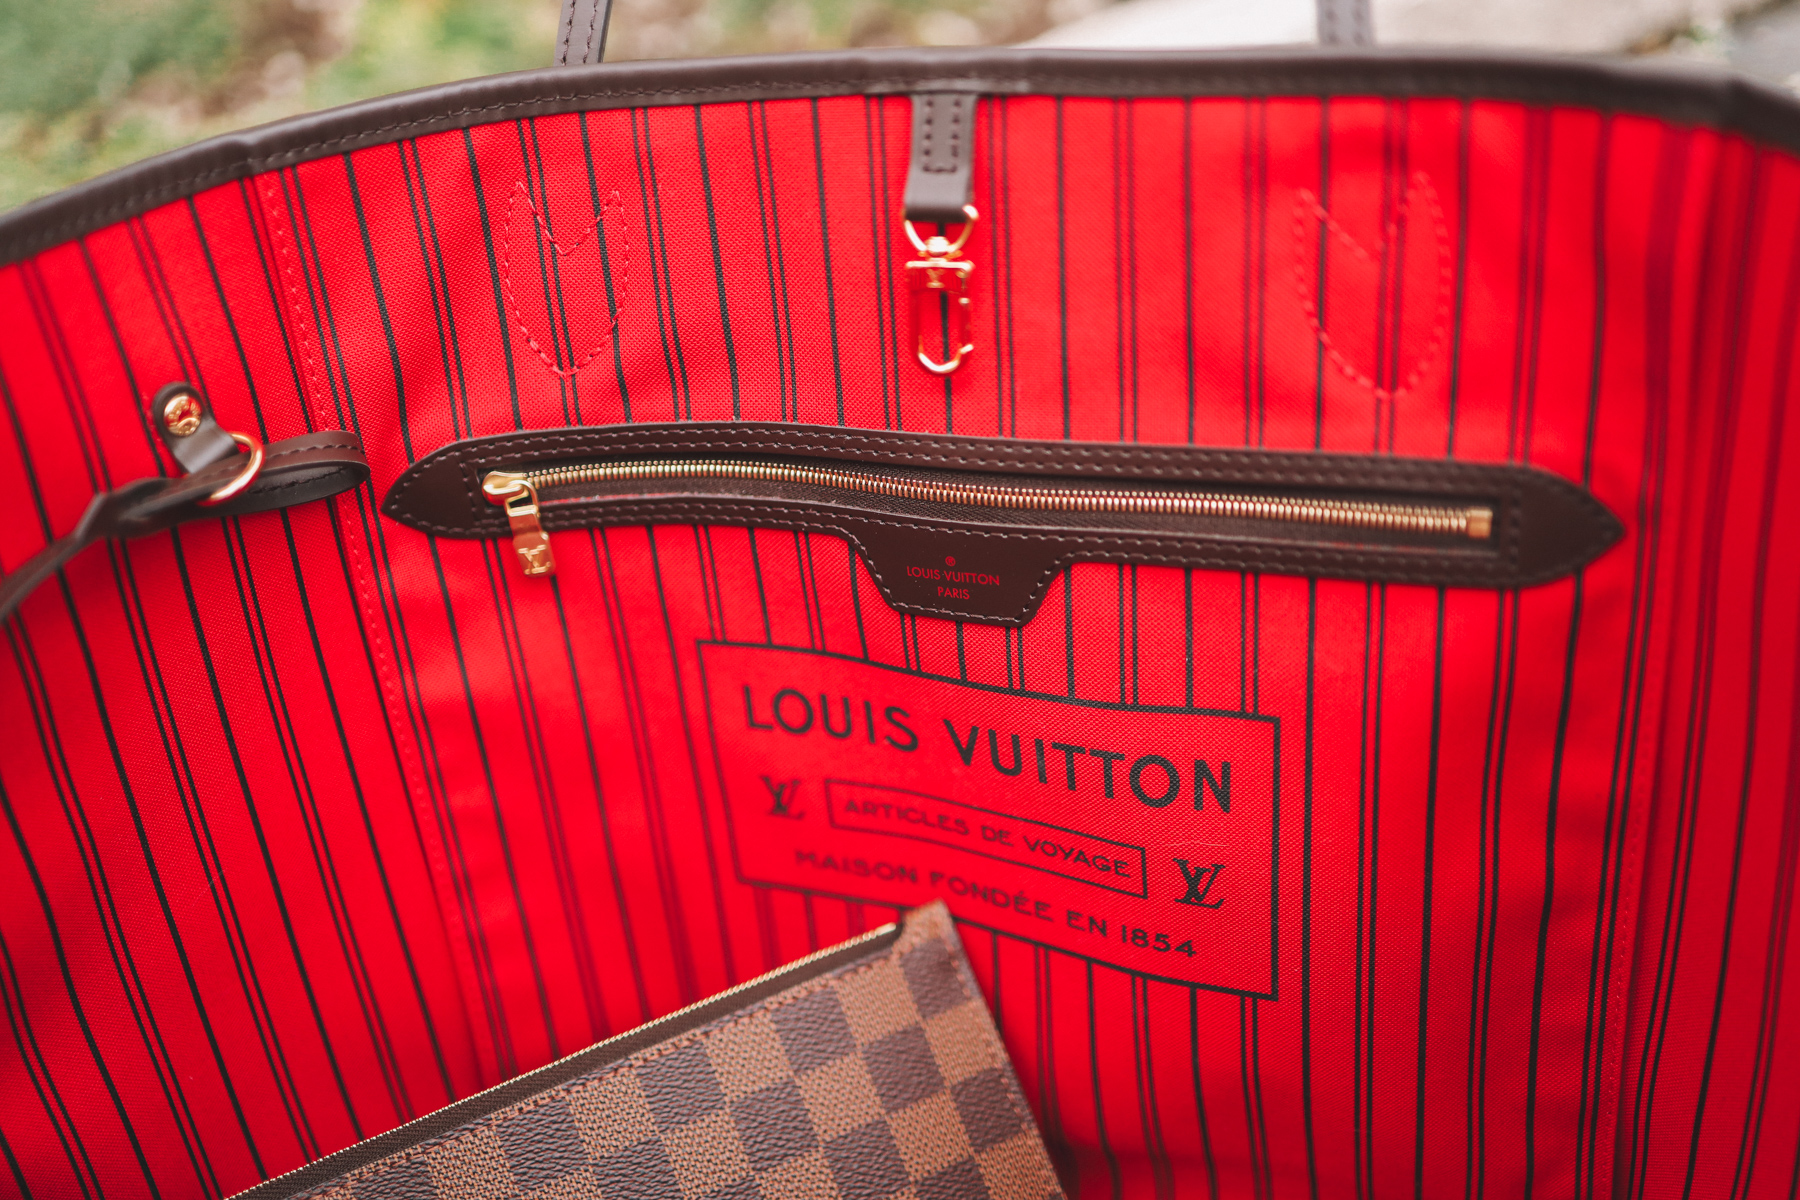 Louis Vuitton Neverfull inside